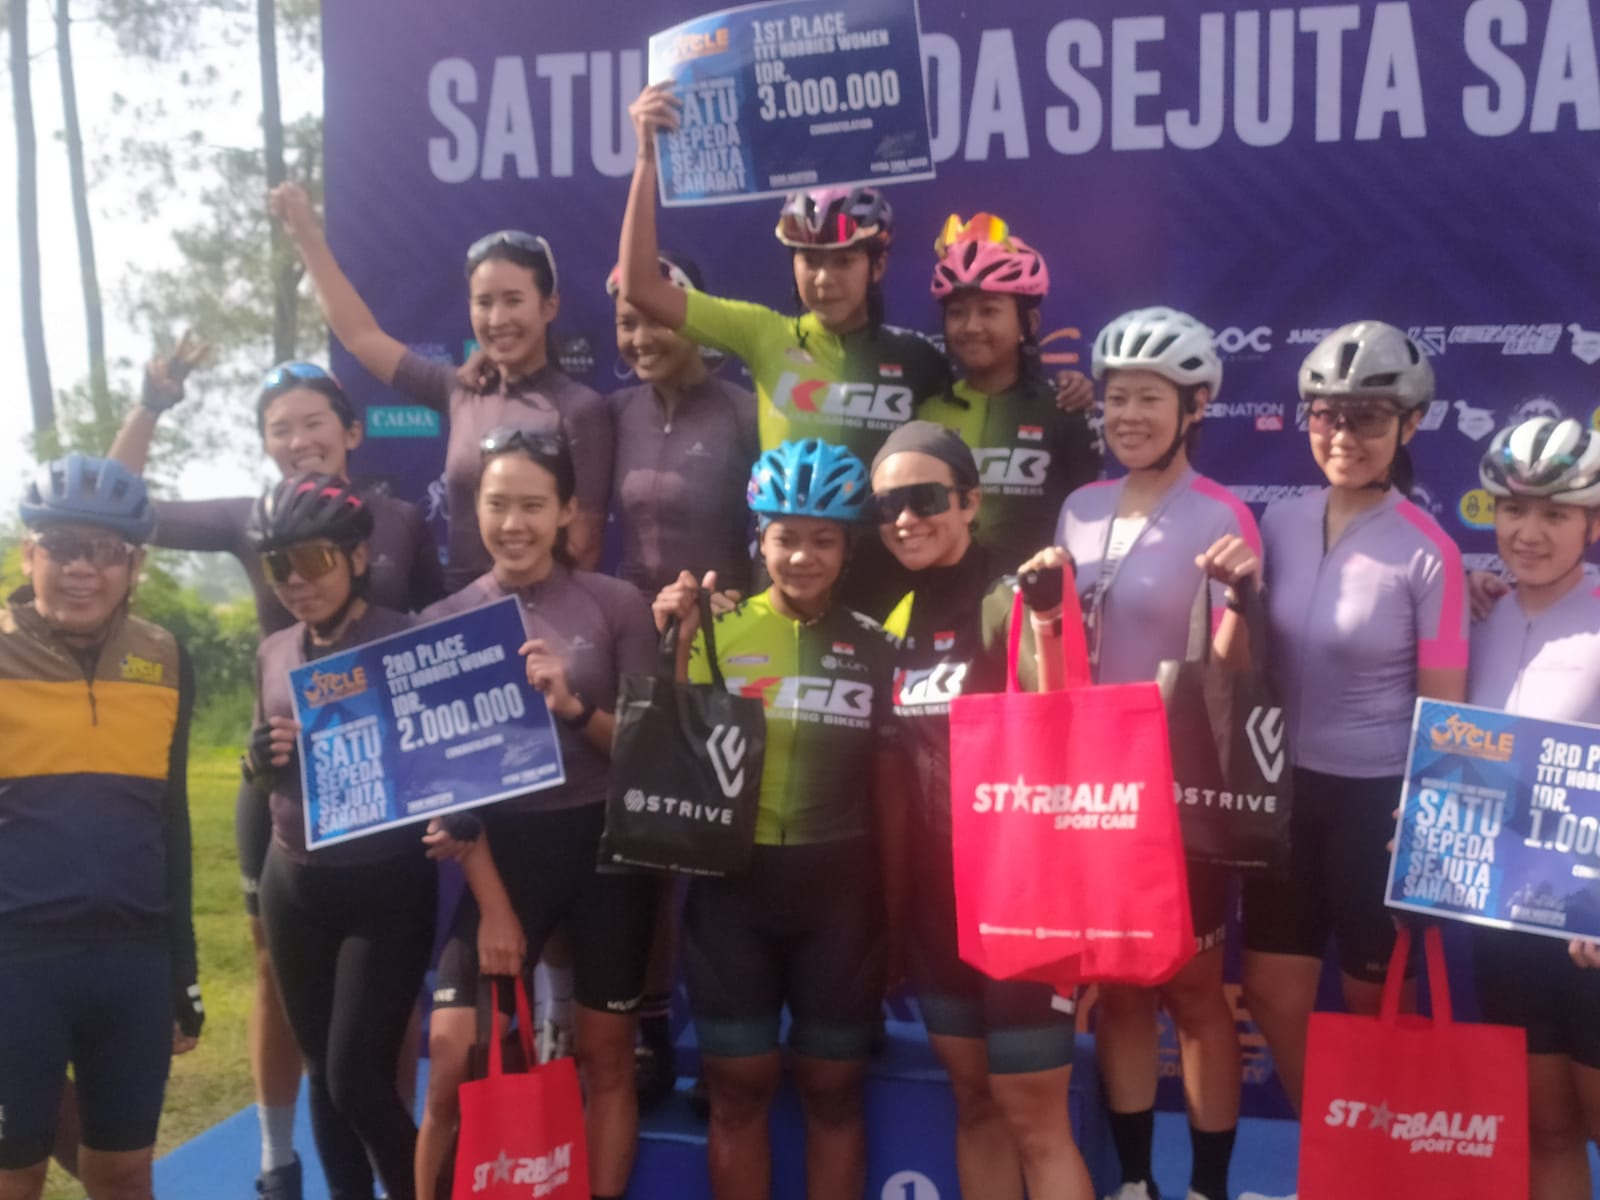 DPW Partai NasDem Jawa Barat membuat gebrakan dengan menggelar ‘NasDem Cycling Booster’ satu sepeda sejuta sahabat, Rabu, (303).